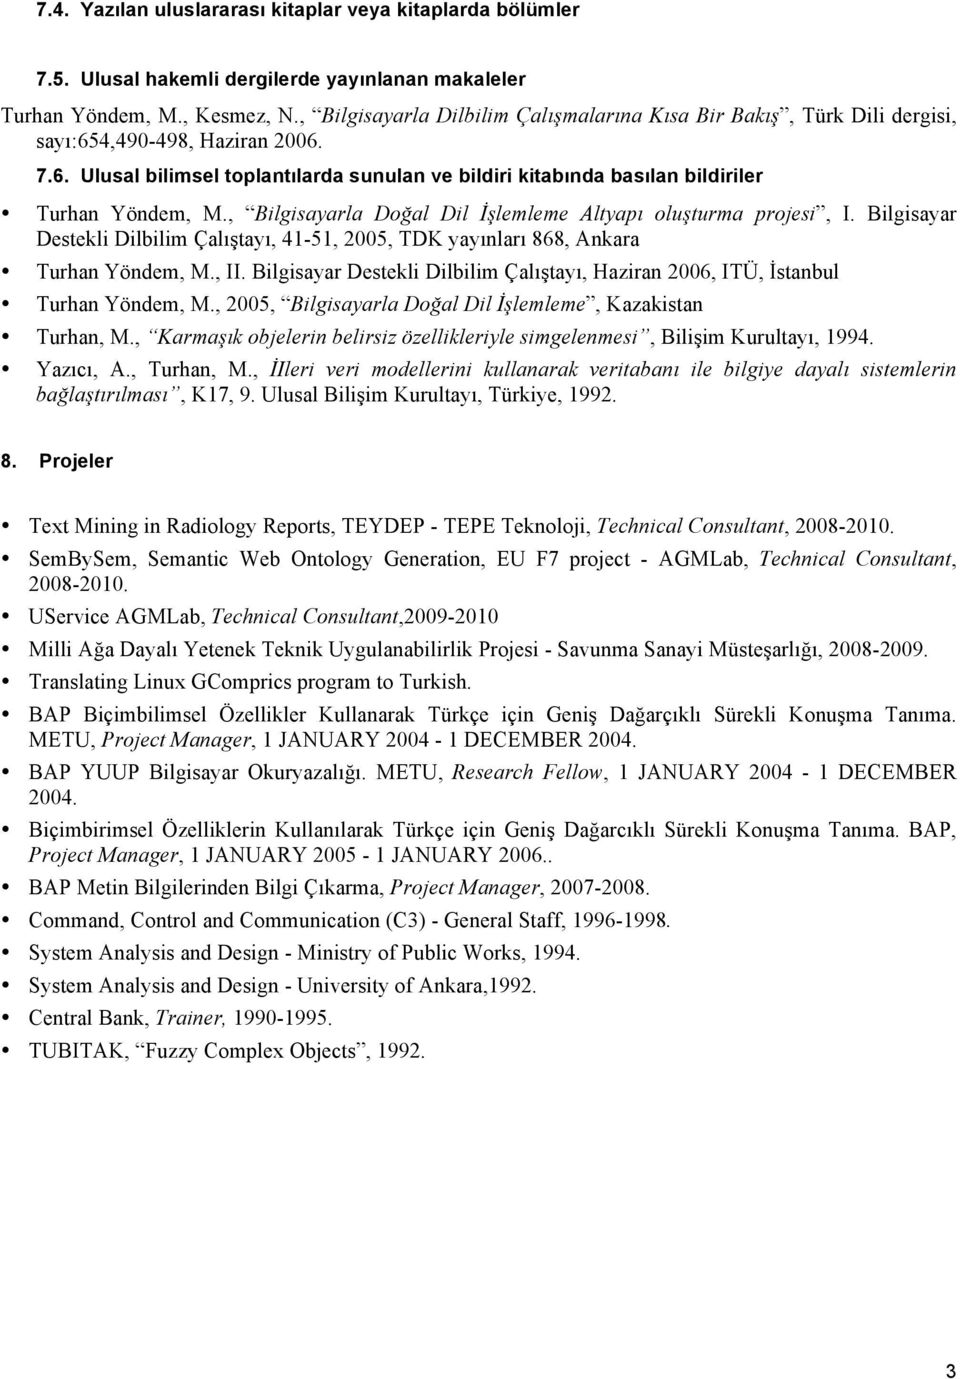 , Bilgisayarla Doğal Dil İşlemleme Altyapı oluşturma projesi, I. Bilgisayar Destekli Dilbilim Çalıştayı, 41-51, 2005, TDK yayınları 868, Ankara Turhan Yöndem, M., II.